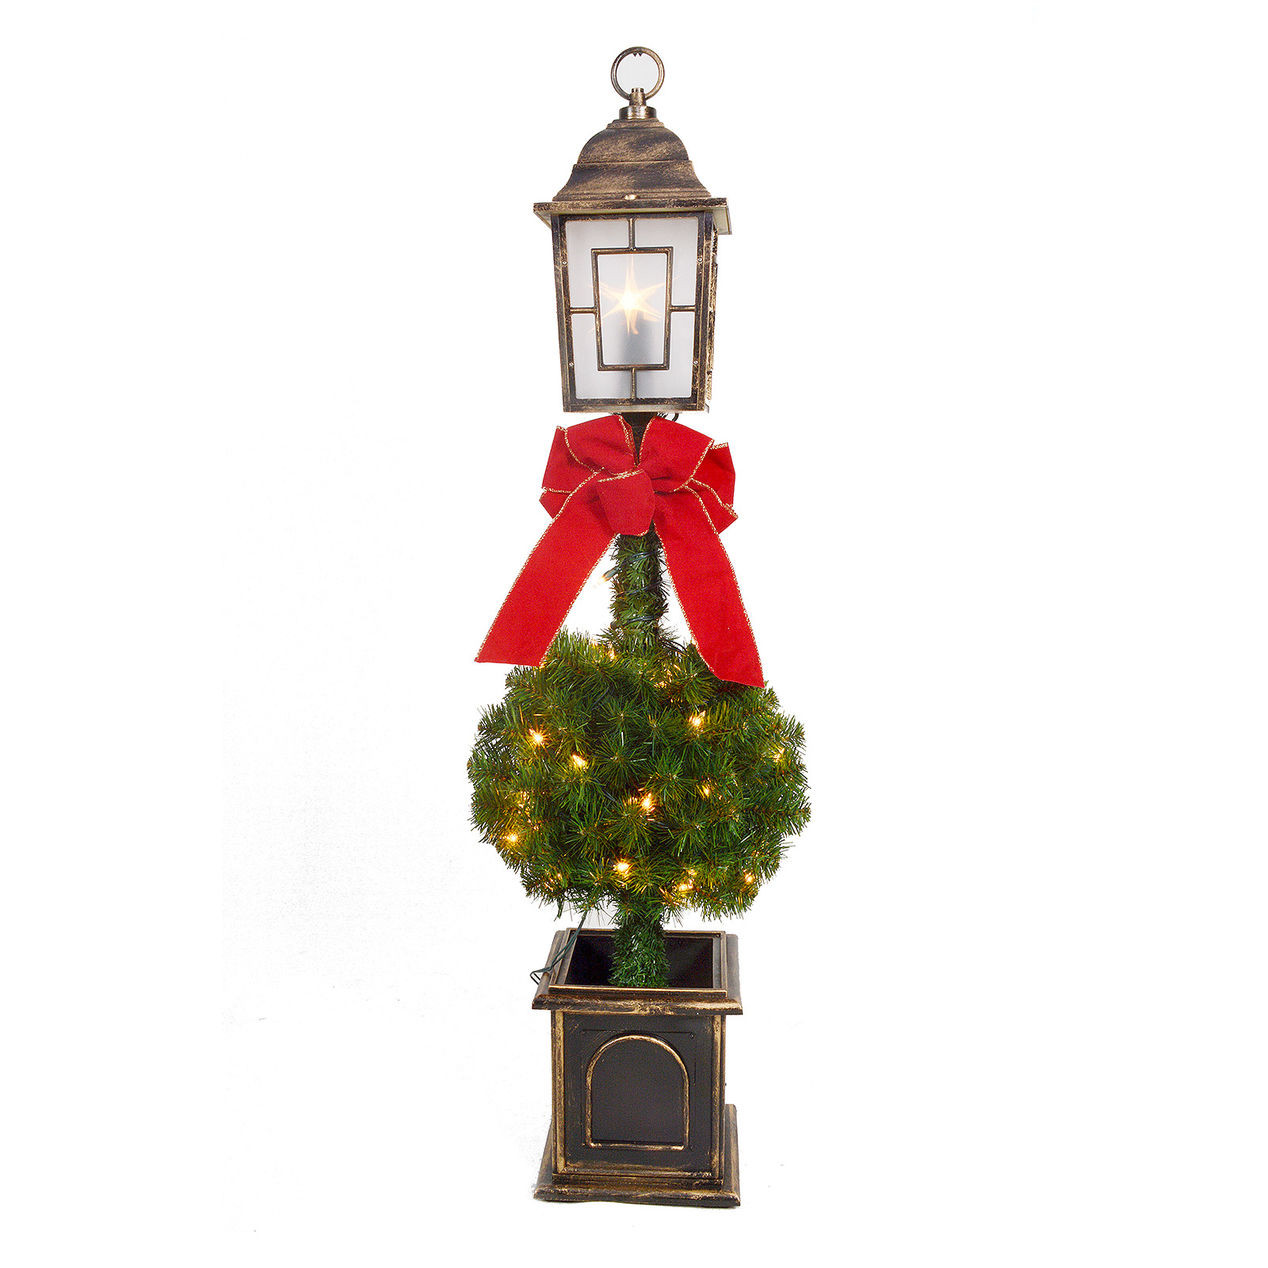 Christmas Lamp Posts
 E3 4 ft Pre Lit Lamp Post Christmas Tree At Home